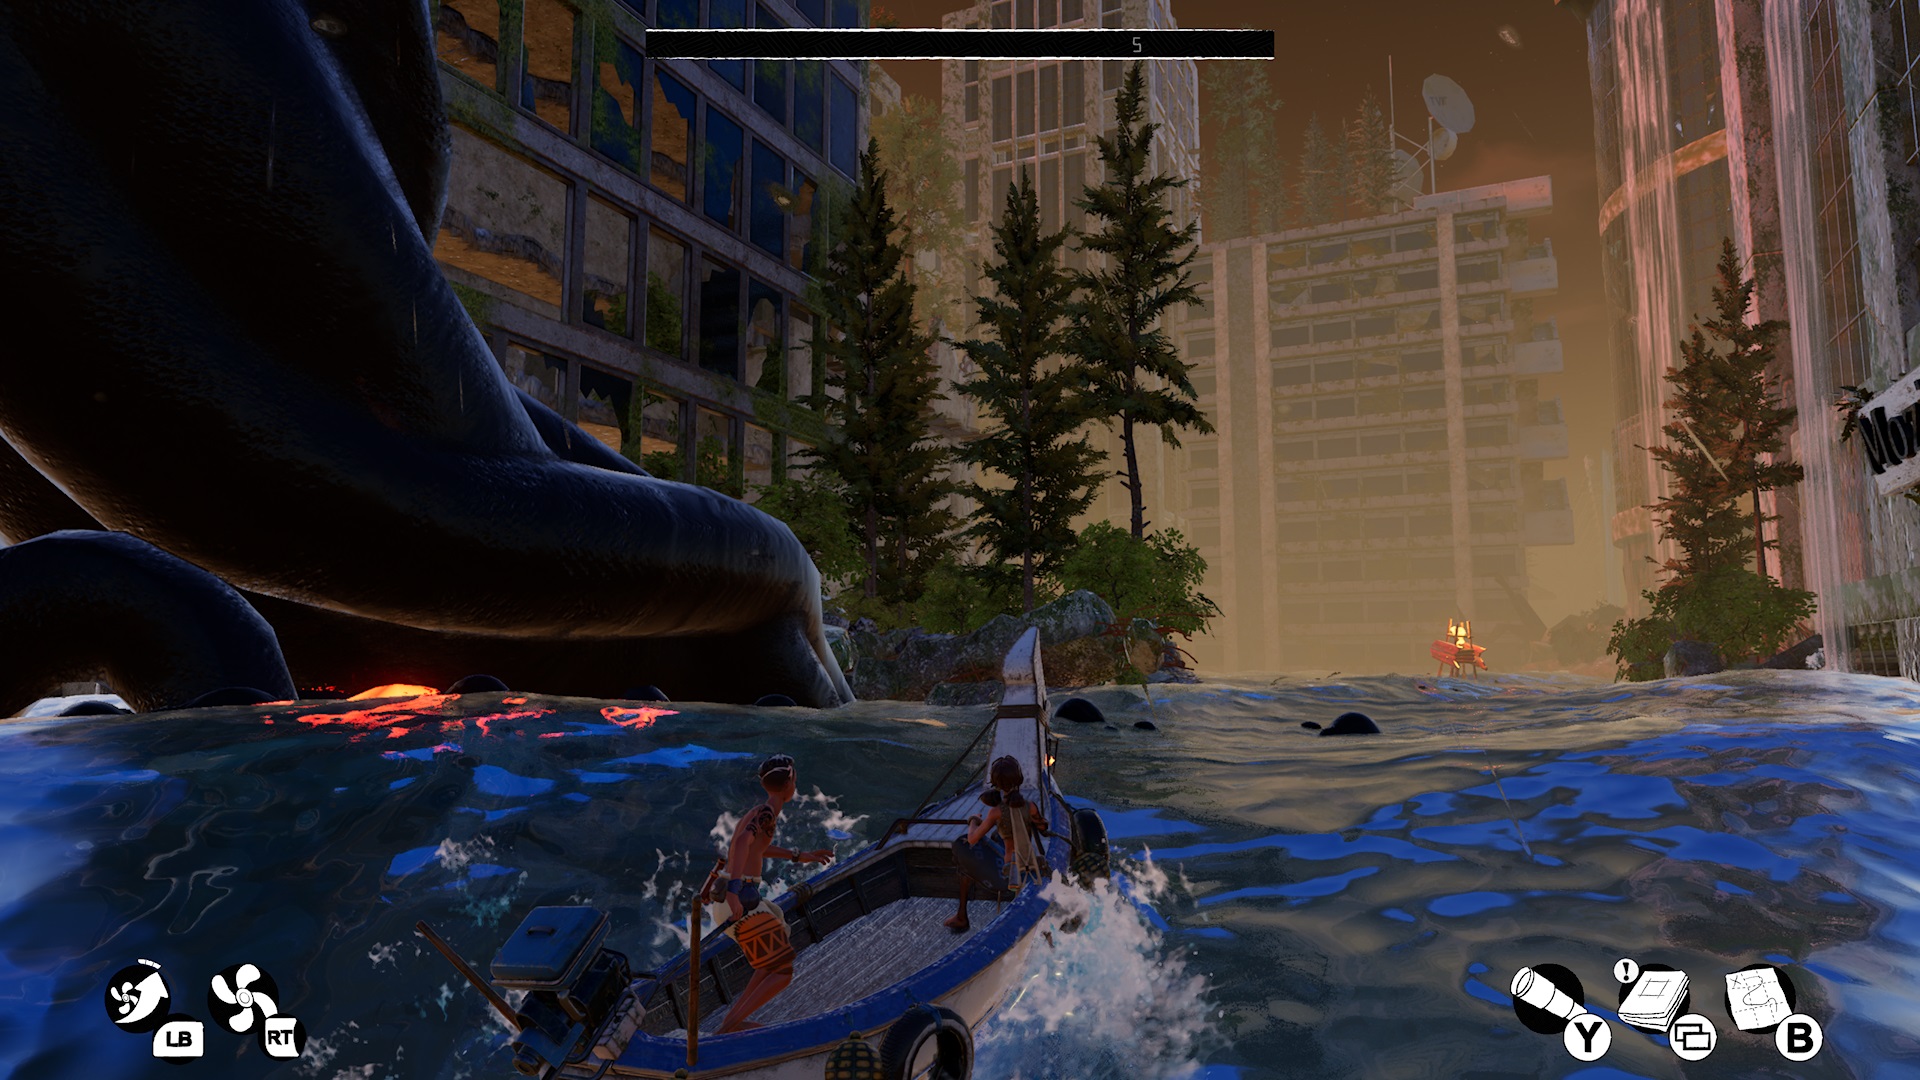 Análisis de Submerged: Hidden Depths - Analizamos Submerged: Hidden Depths para Xbox Series, un título relajante y de puzles que incentiva la exploración en una ciudad totalmente sumergida.